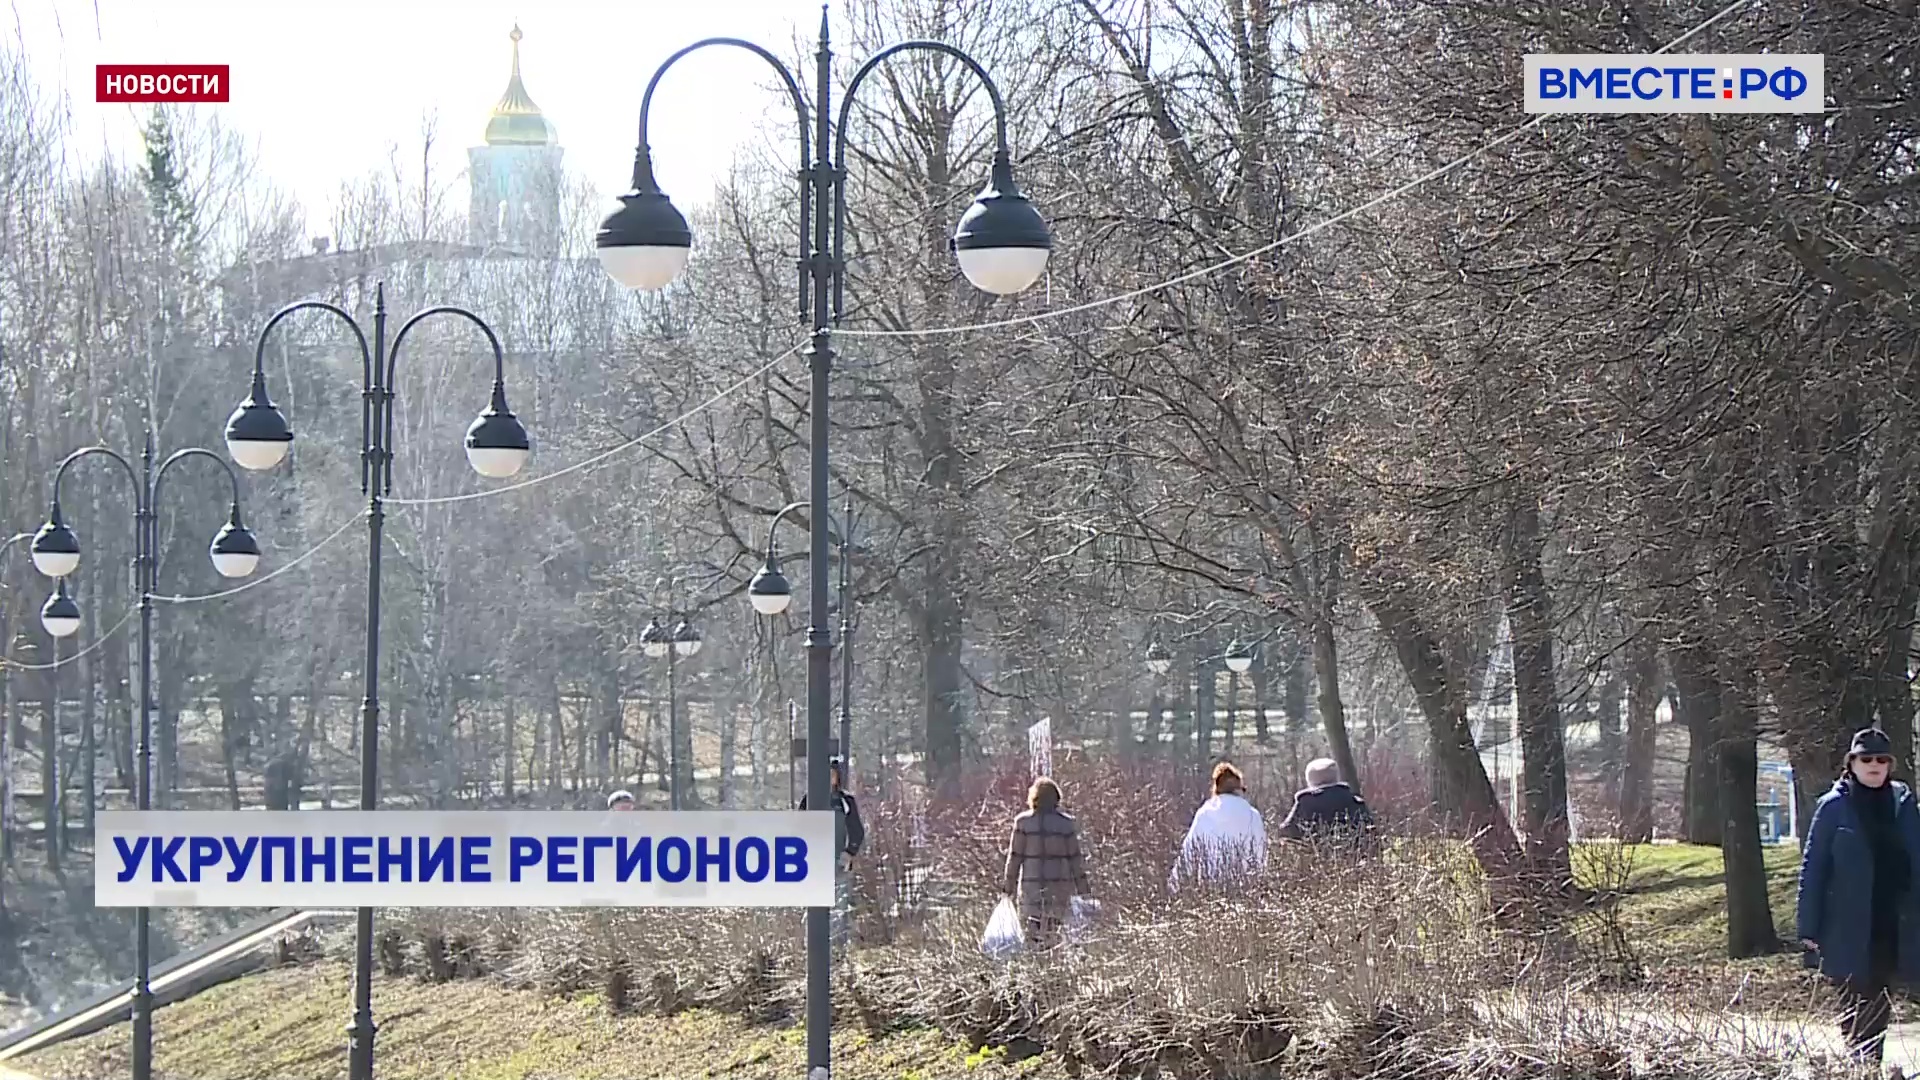 В России есть регионы, которые нуждаются в объединении, считает Матвиенко